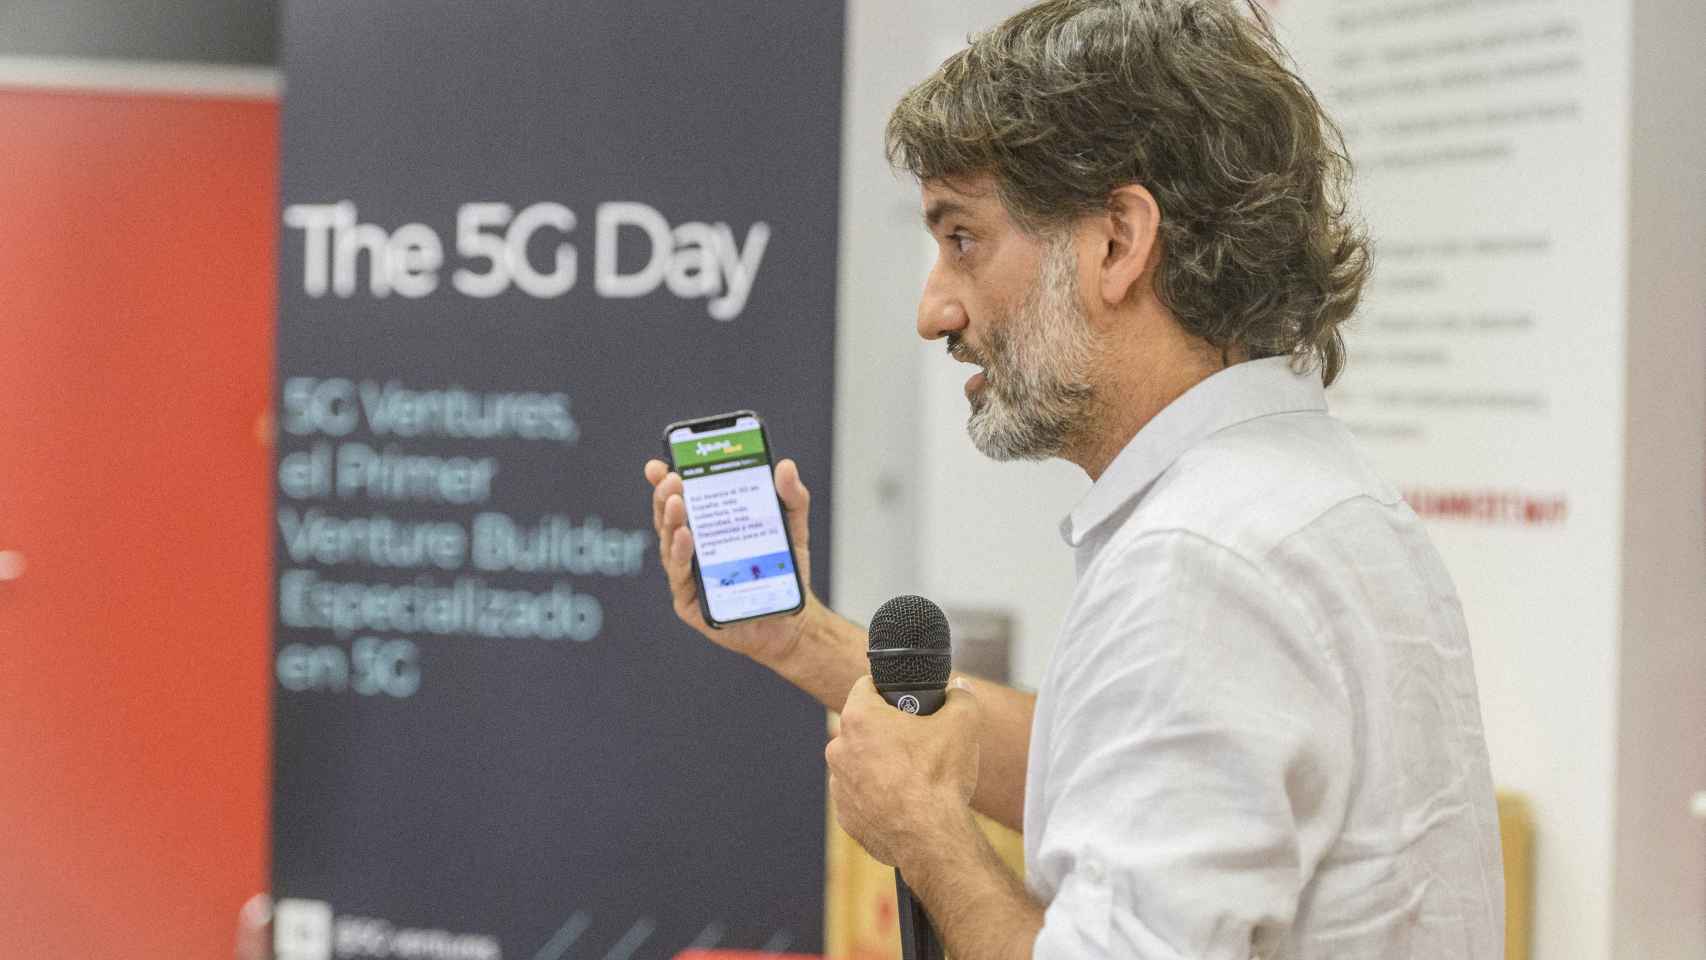 Alberto Villalobos, CEO de 5G Ventures, durante la celebración del evento “The 5G Day” en Barcelona.